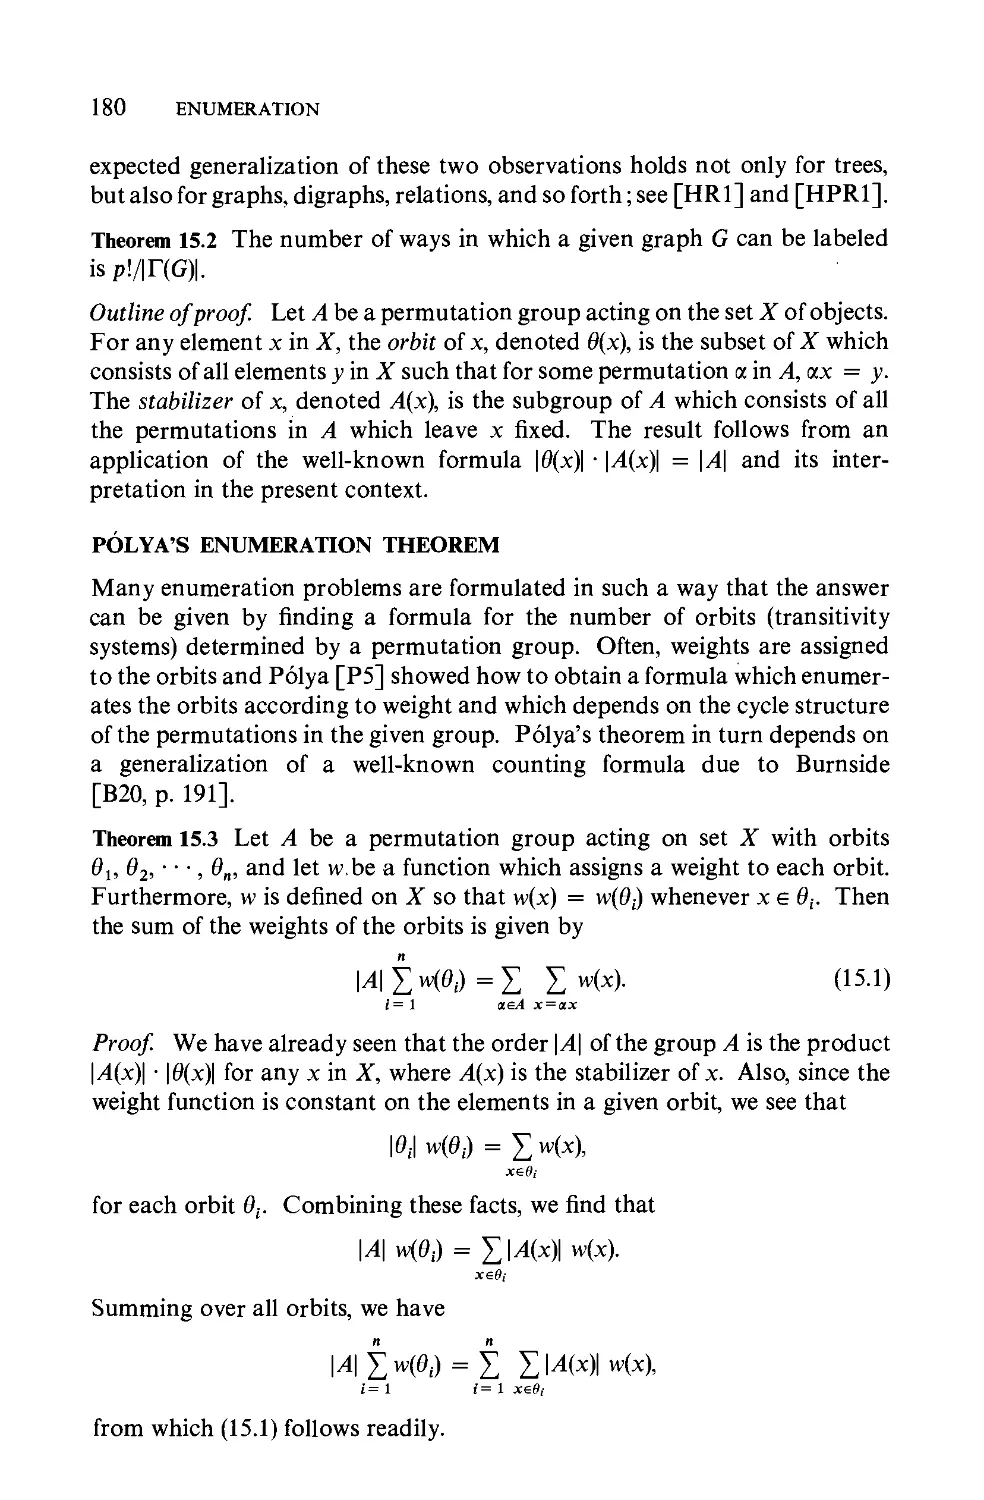 Polya's enumeration theorem